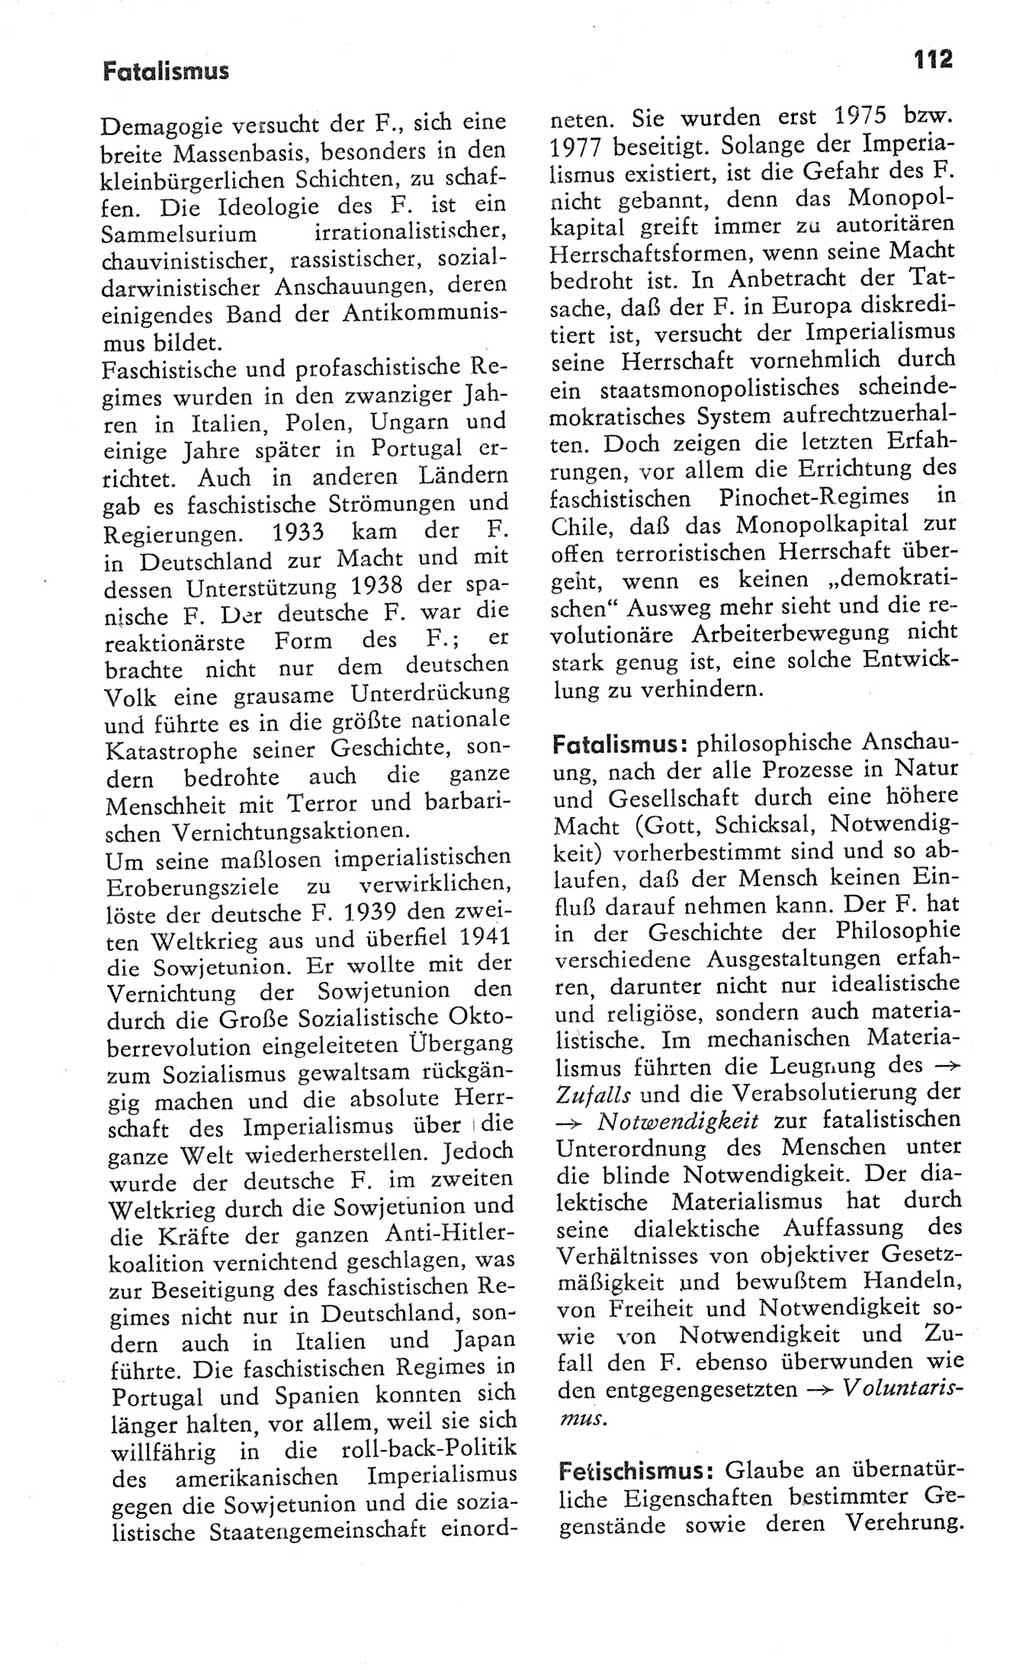 Kleines Wörterbuch der marxistisch-leninistischen Philosophie [Deutsche Demokratische Republik (DDR)] 1982, Seite 112 (Kl. Wb. ML Phil. DDR 1982, S. 112)